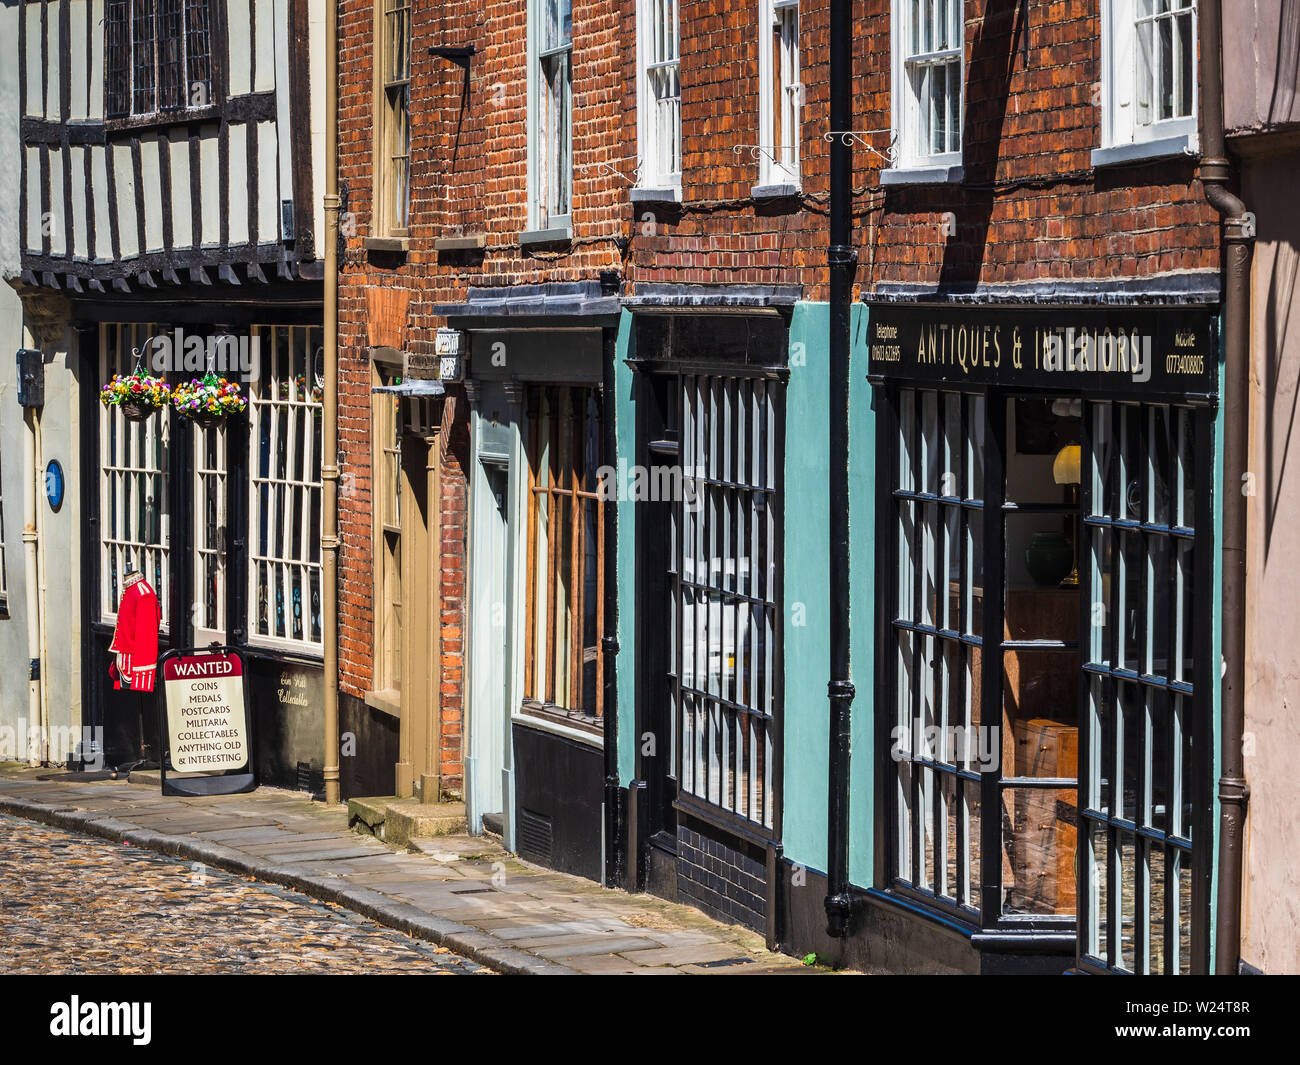 Elm Hill Norwich - un histórico empedrado Lane en el centro de Norwich, Reino Unido. La calle contiene un número de edificios históricos que datan de la época Tudor. Foto de stock